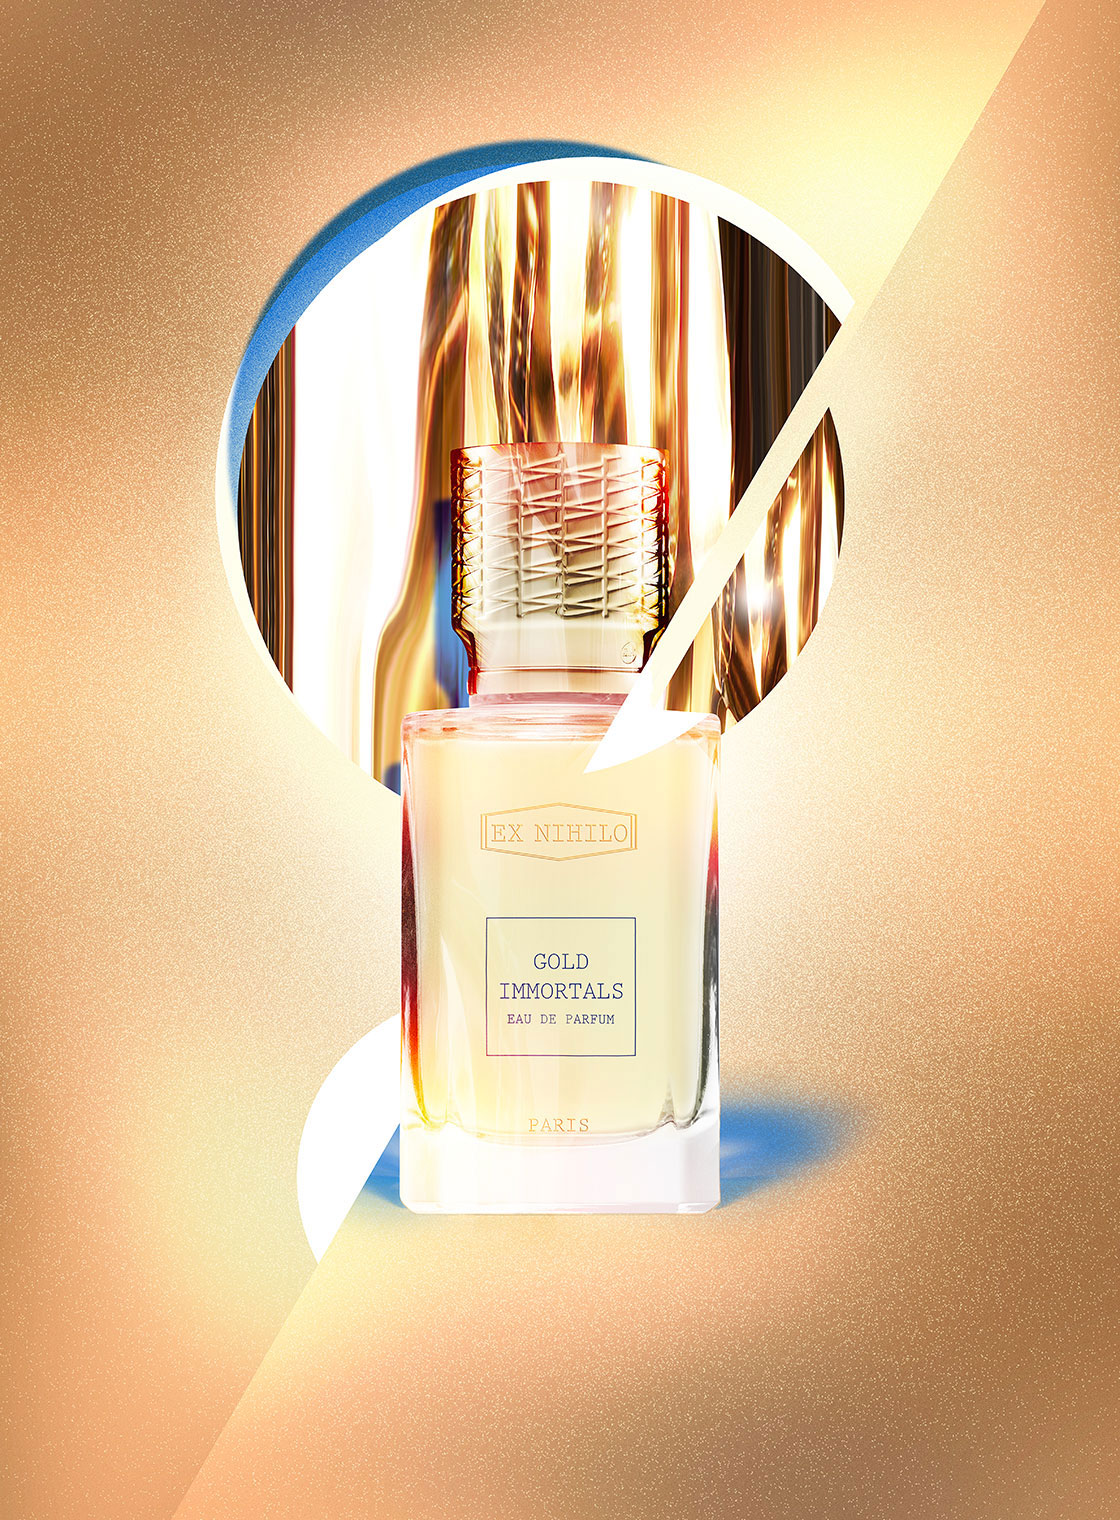 Ex Nihilo Gold Immortals Perfume Ad